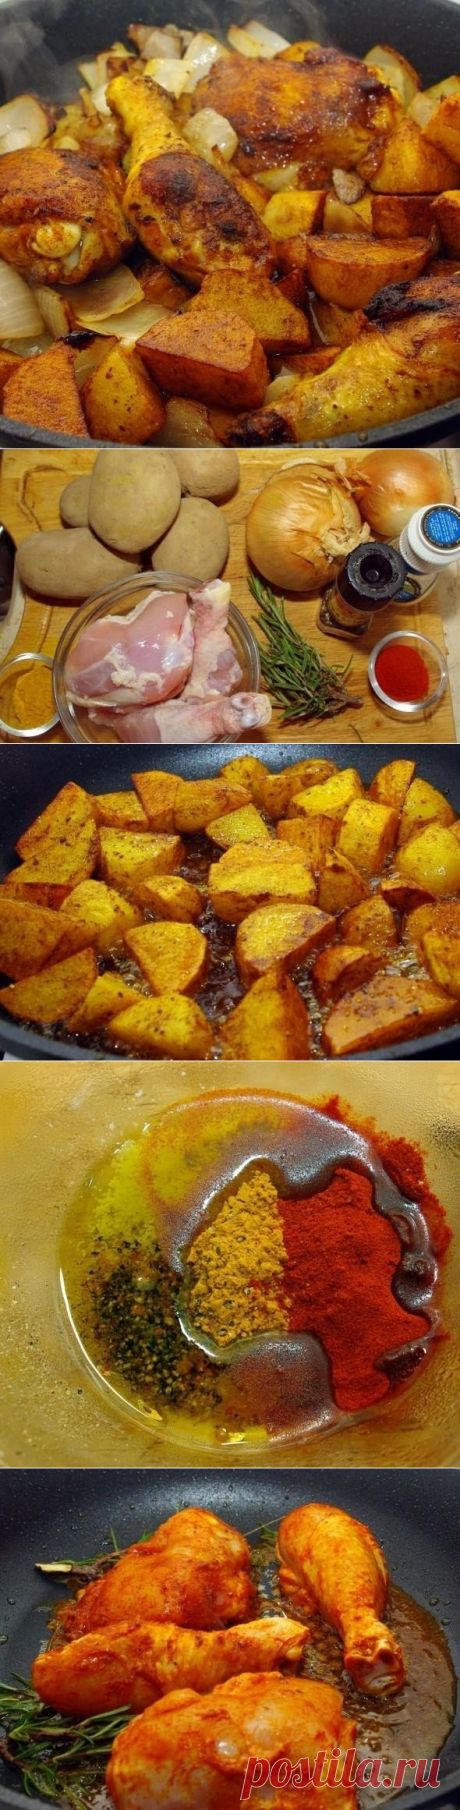 Как приготовить софрито или курица с картошкой и луком - рецепт, ингредиенты и фотографии